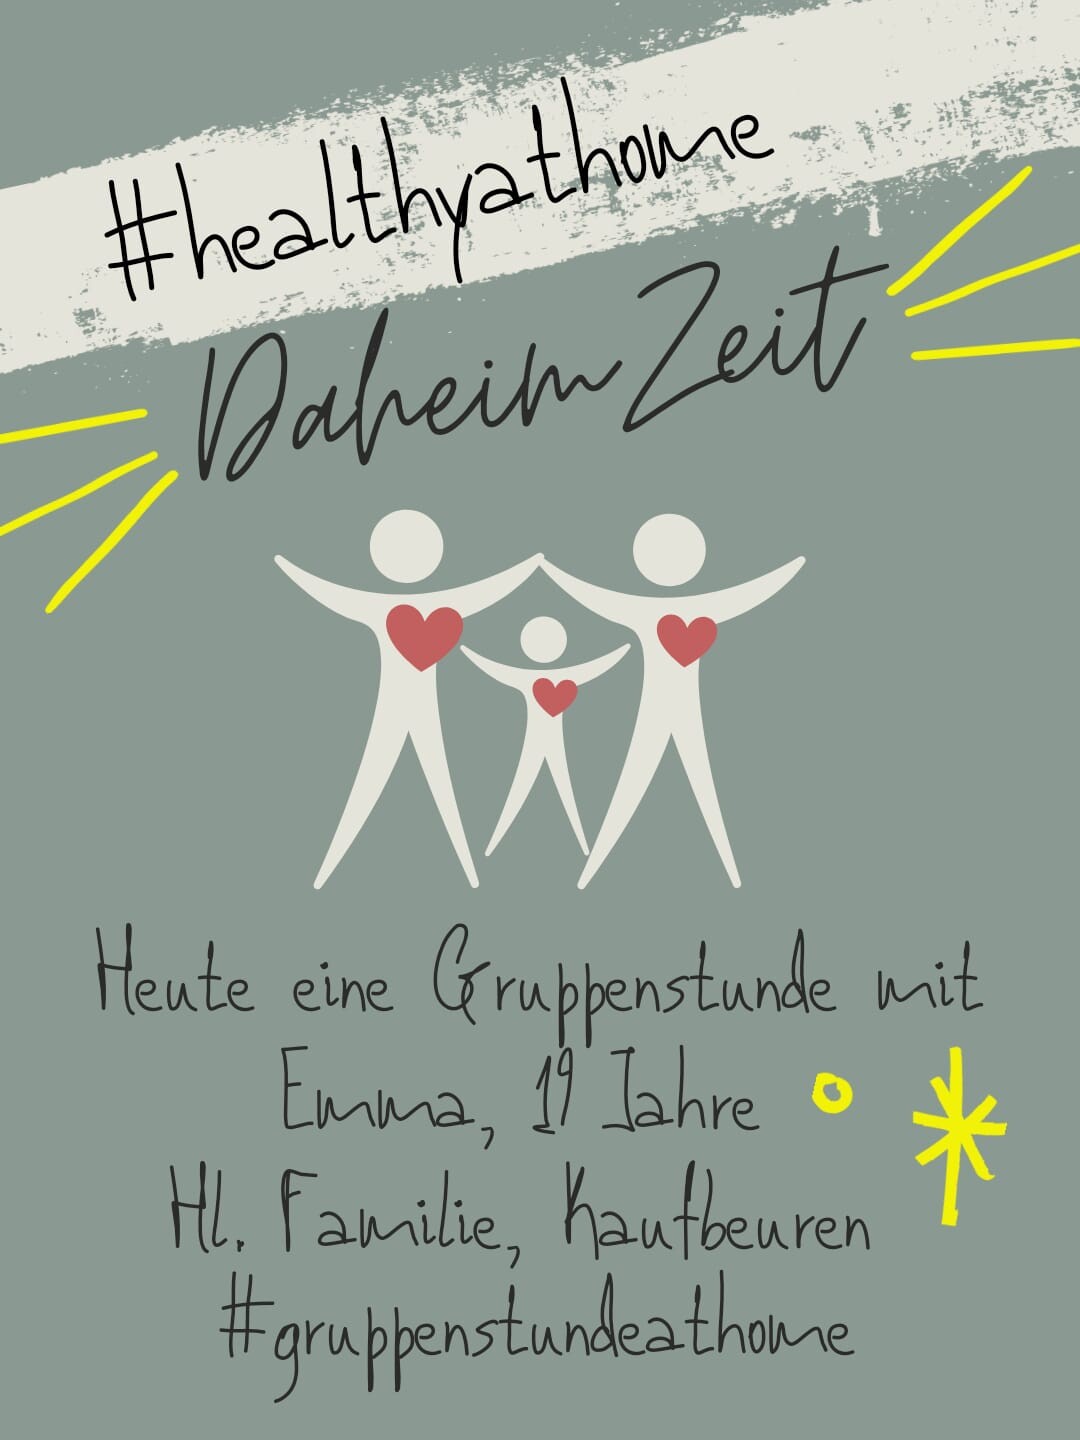  #healthyathome - Würfelworkout (Dienstag, 24. März 2020 - Download)